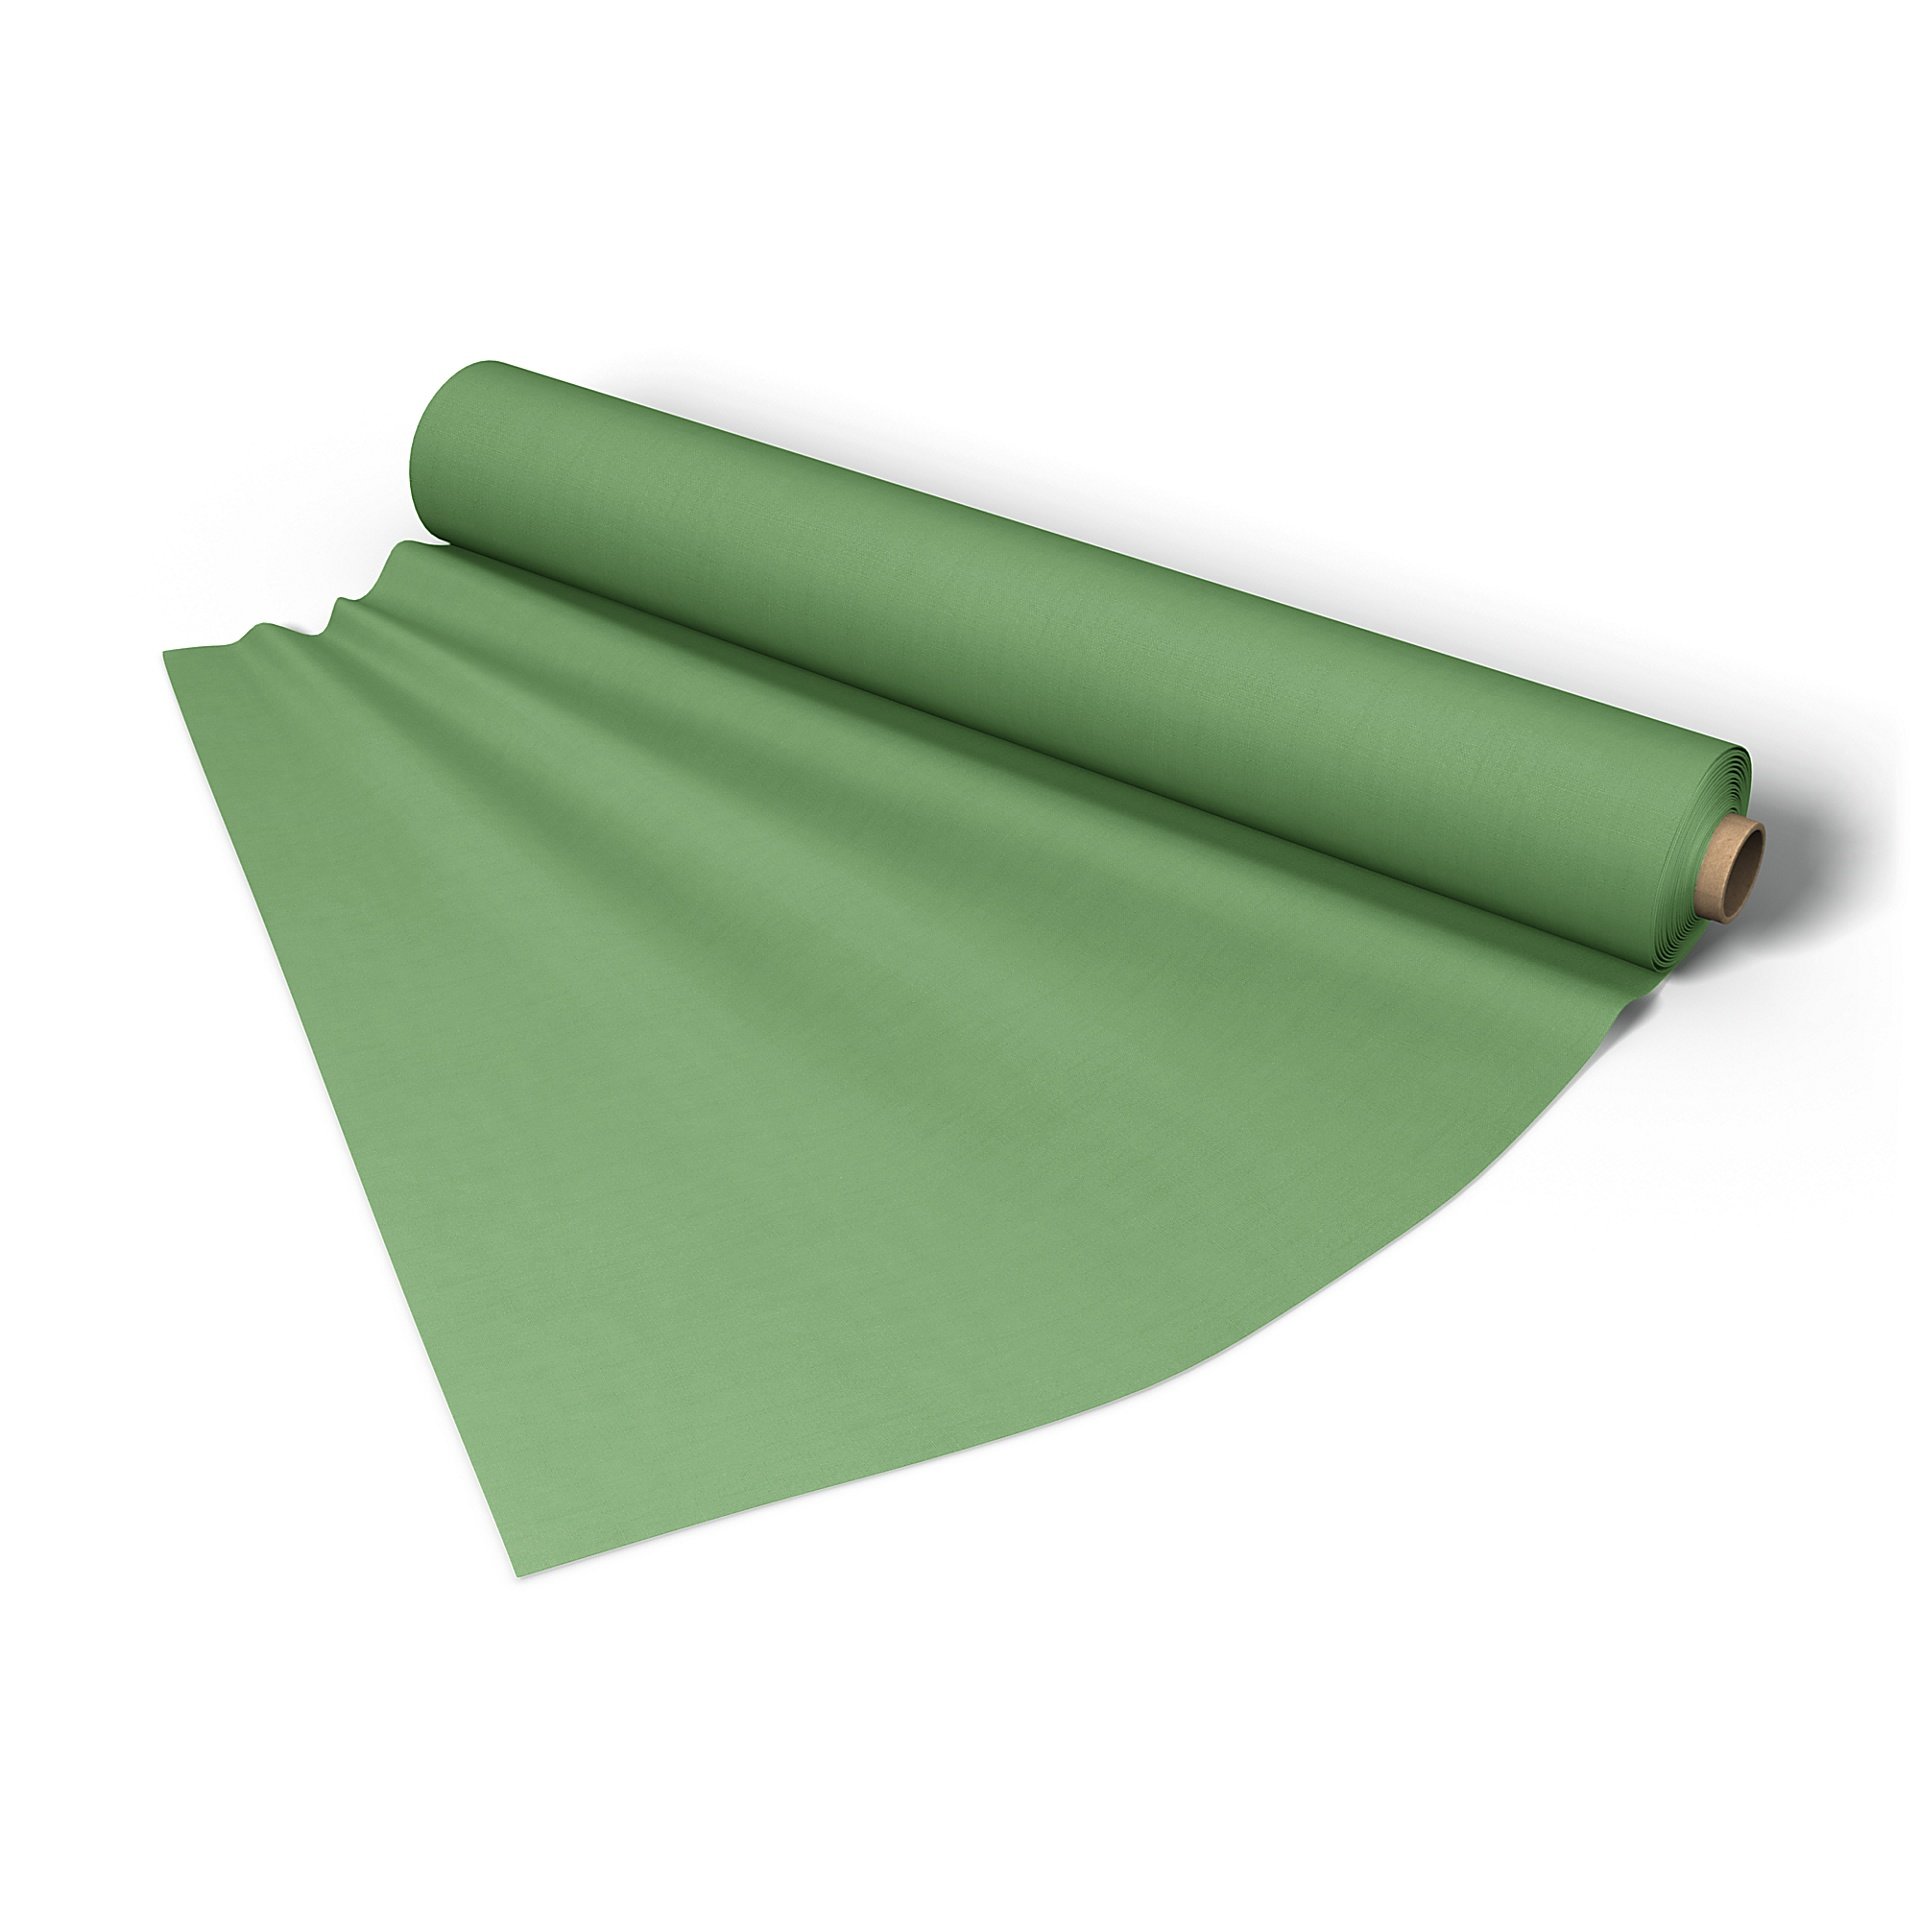 Fabric per metre, Apple Green, Linen - Bemz